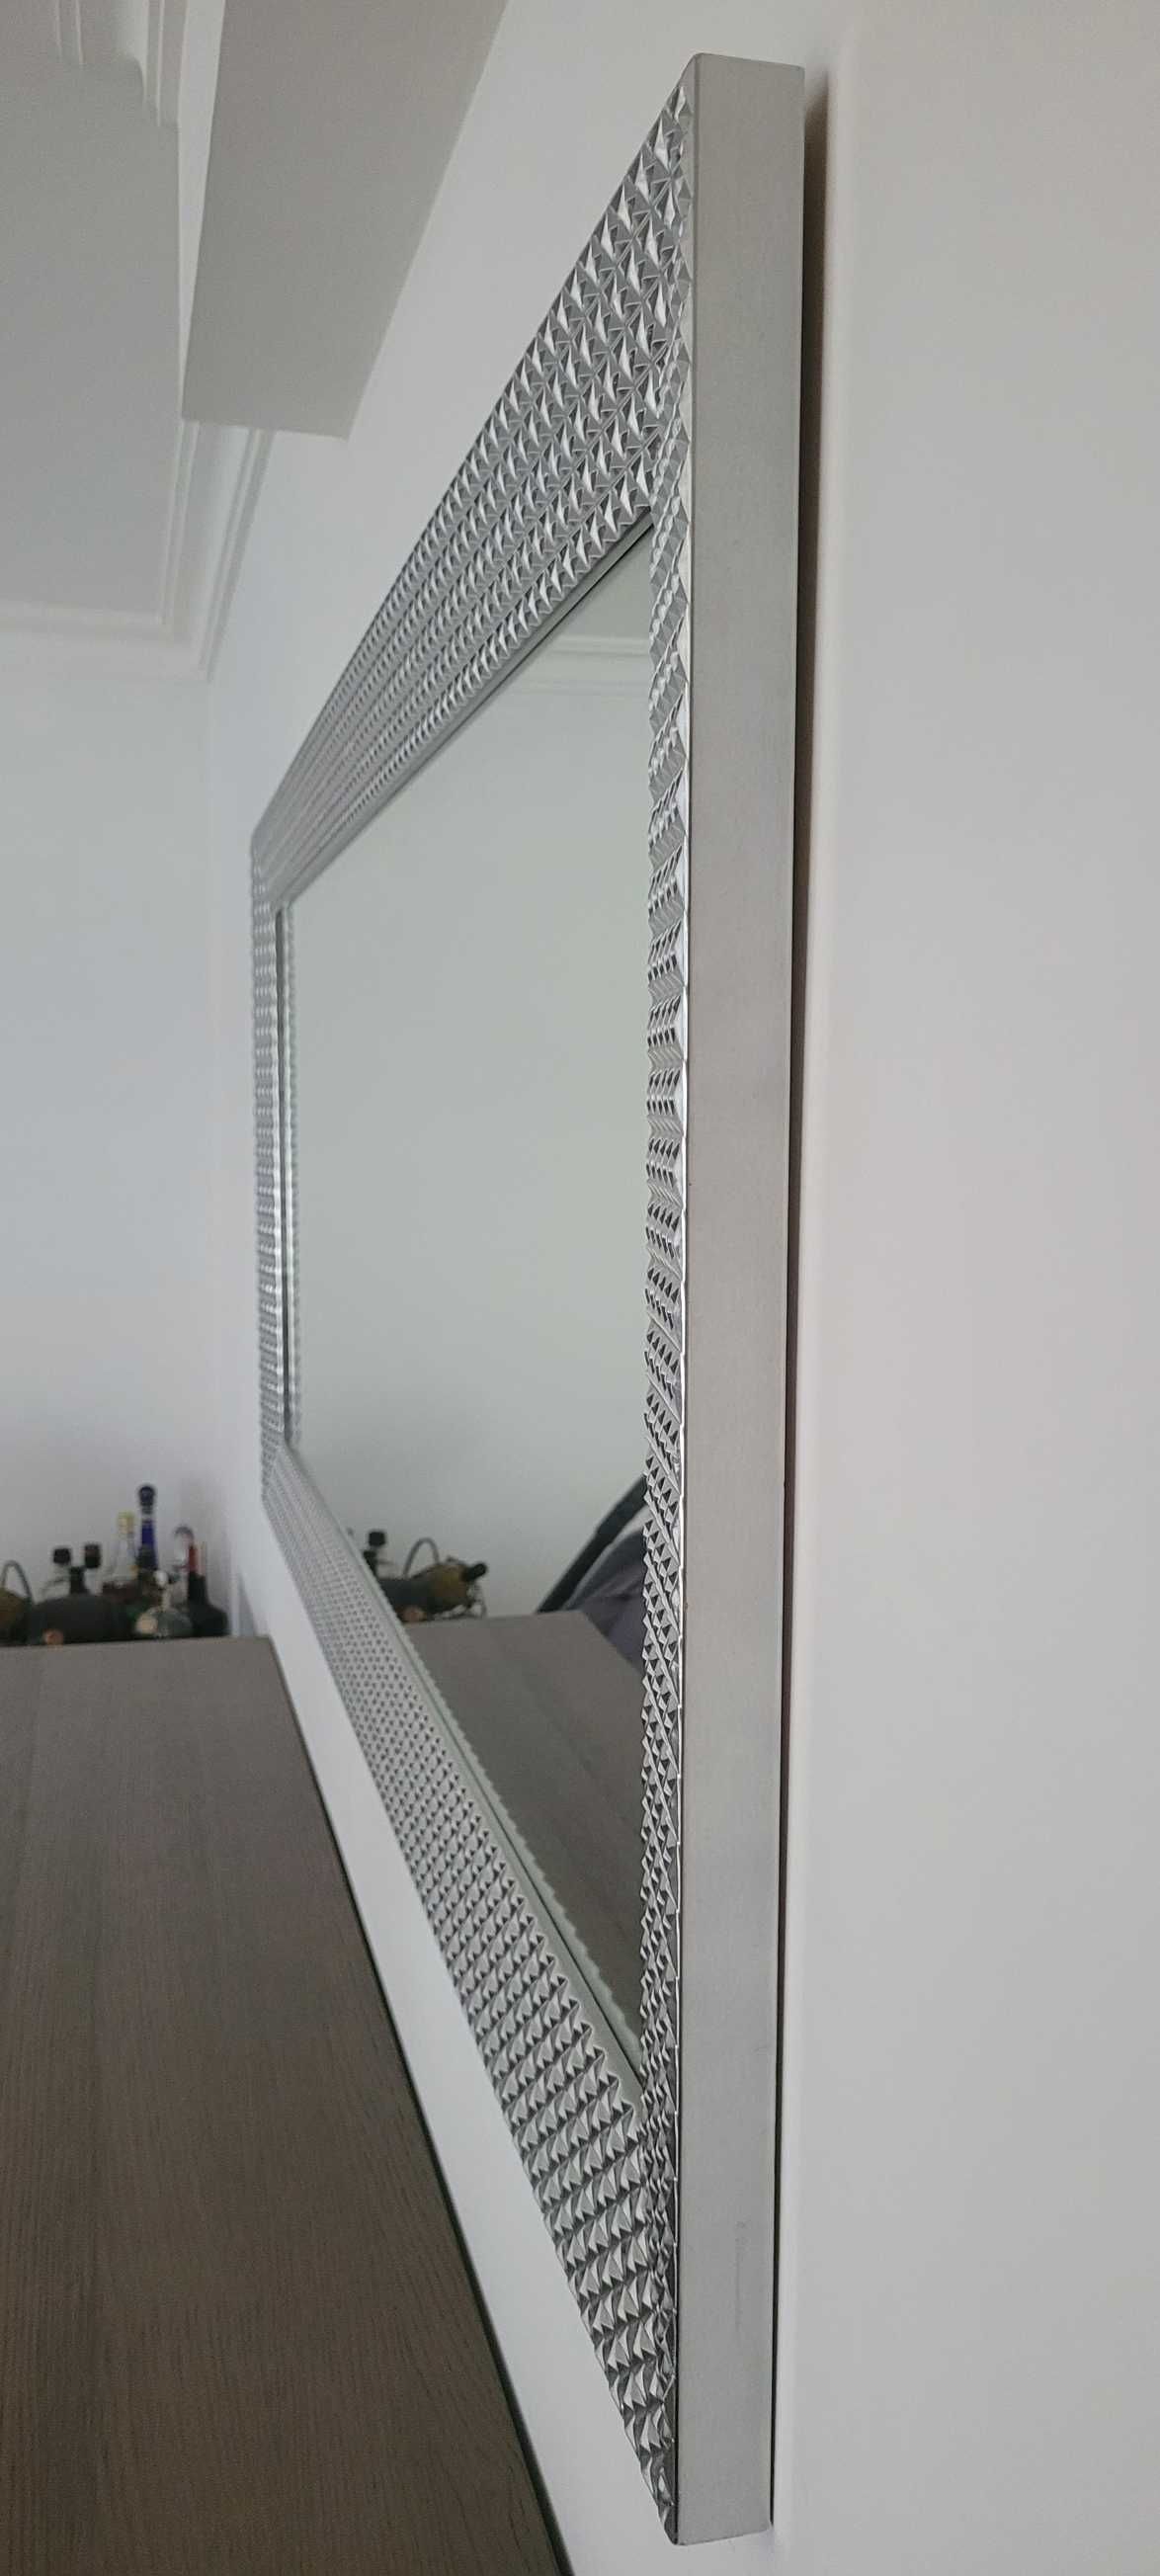 Espelho prateado LasKasas 180cm x 80cm